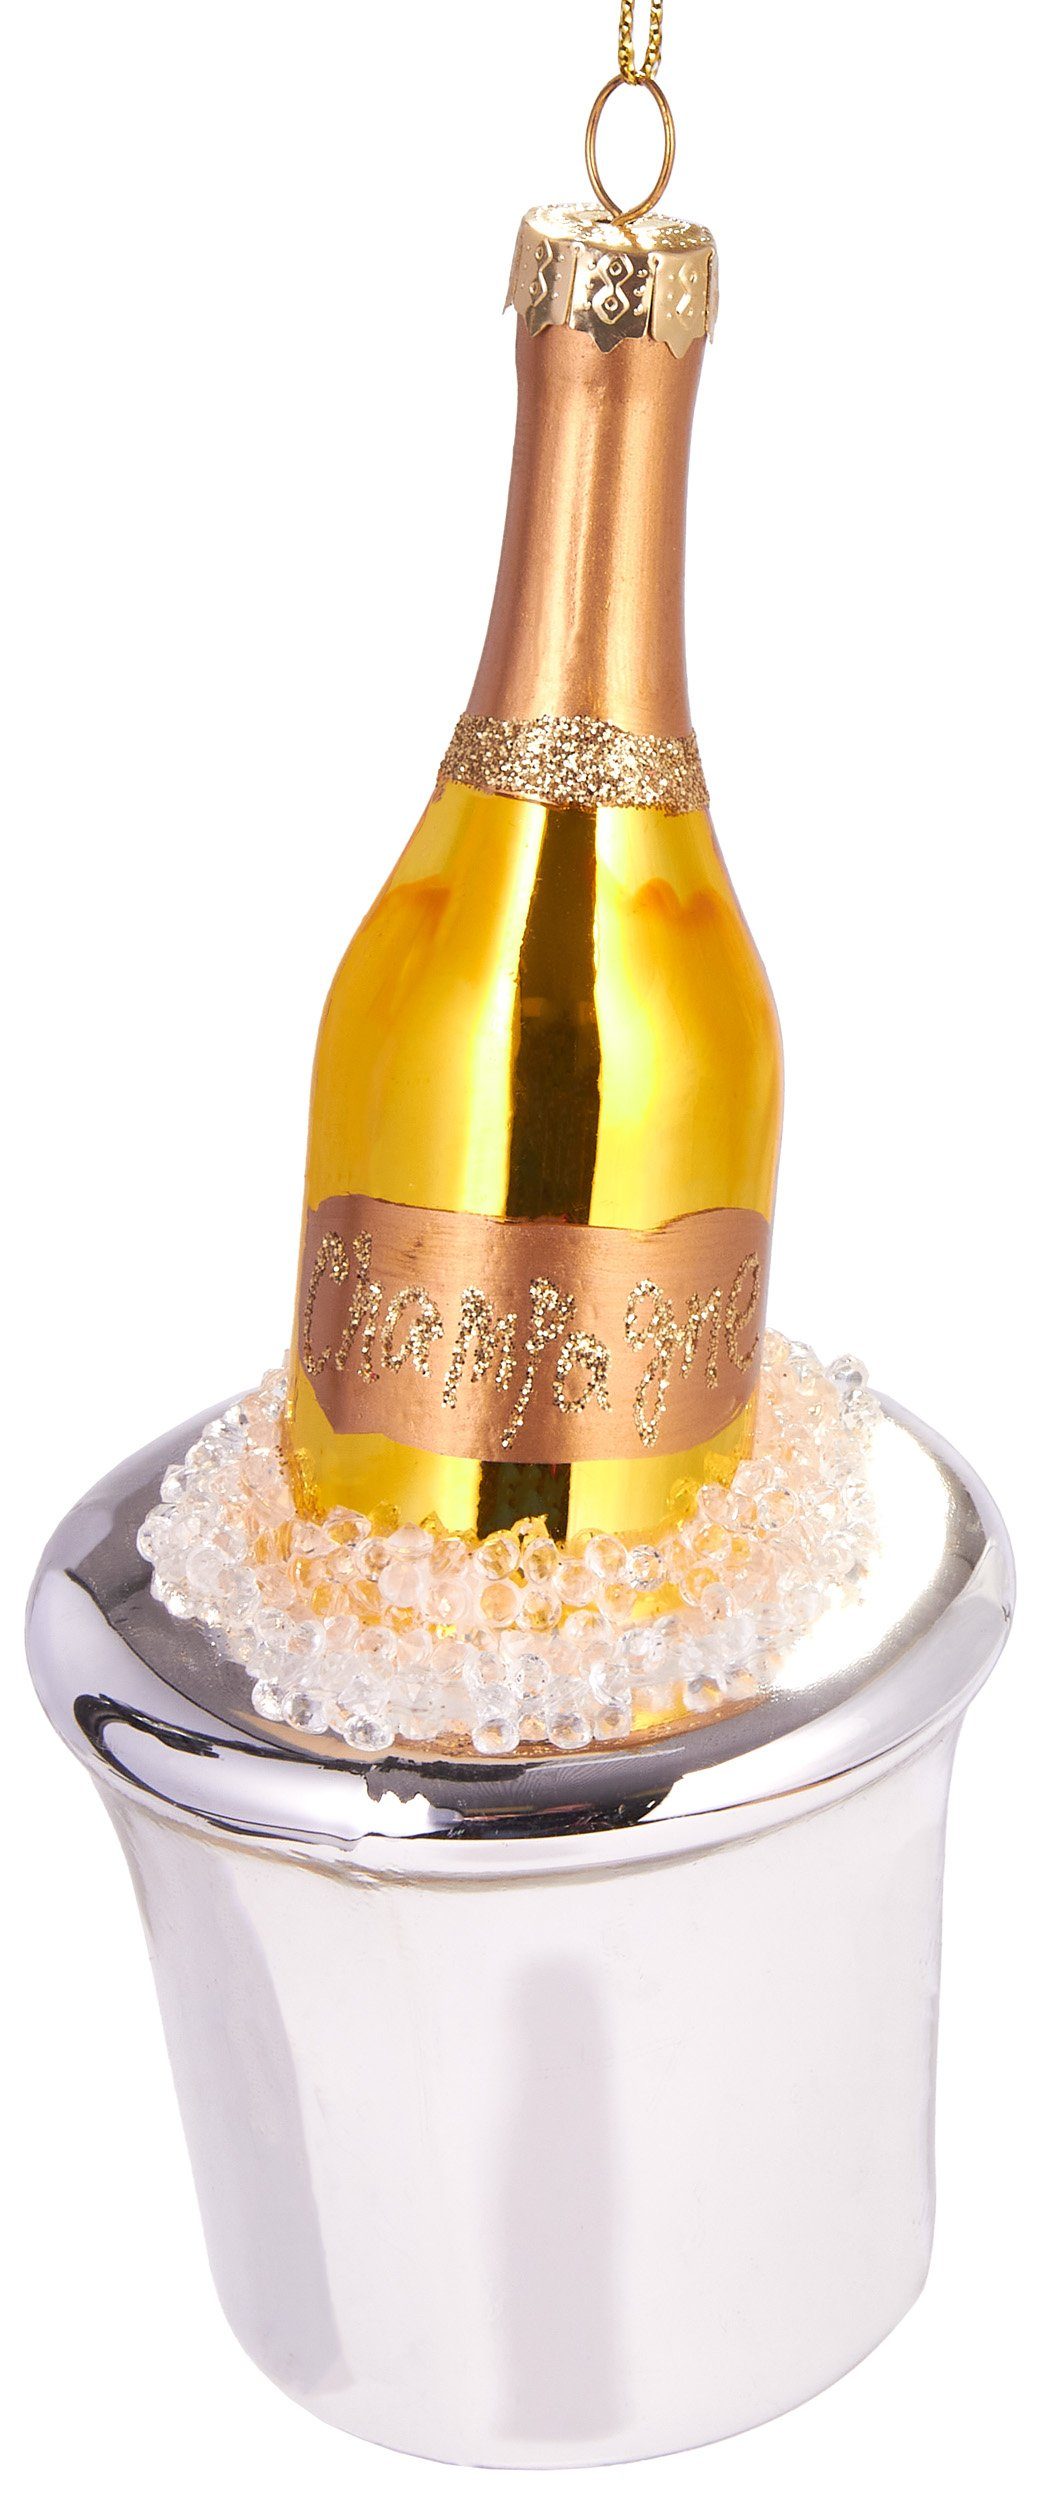 BRUBAKER Christbaumschmuck Handbemalte Baumkugel Champagnerflasche, schöner Weihnachtsanhänger aus Glas, mundgeblasenes Unikat - Lustige Weihnachtskugel ca. 14.5 cm